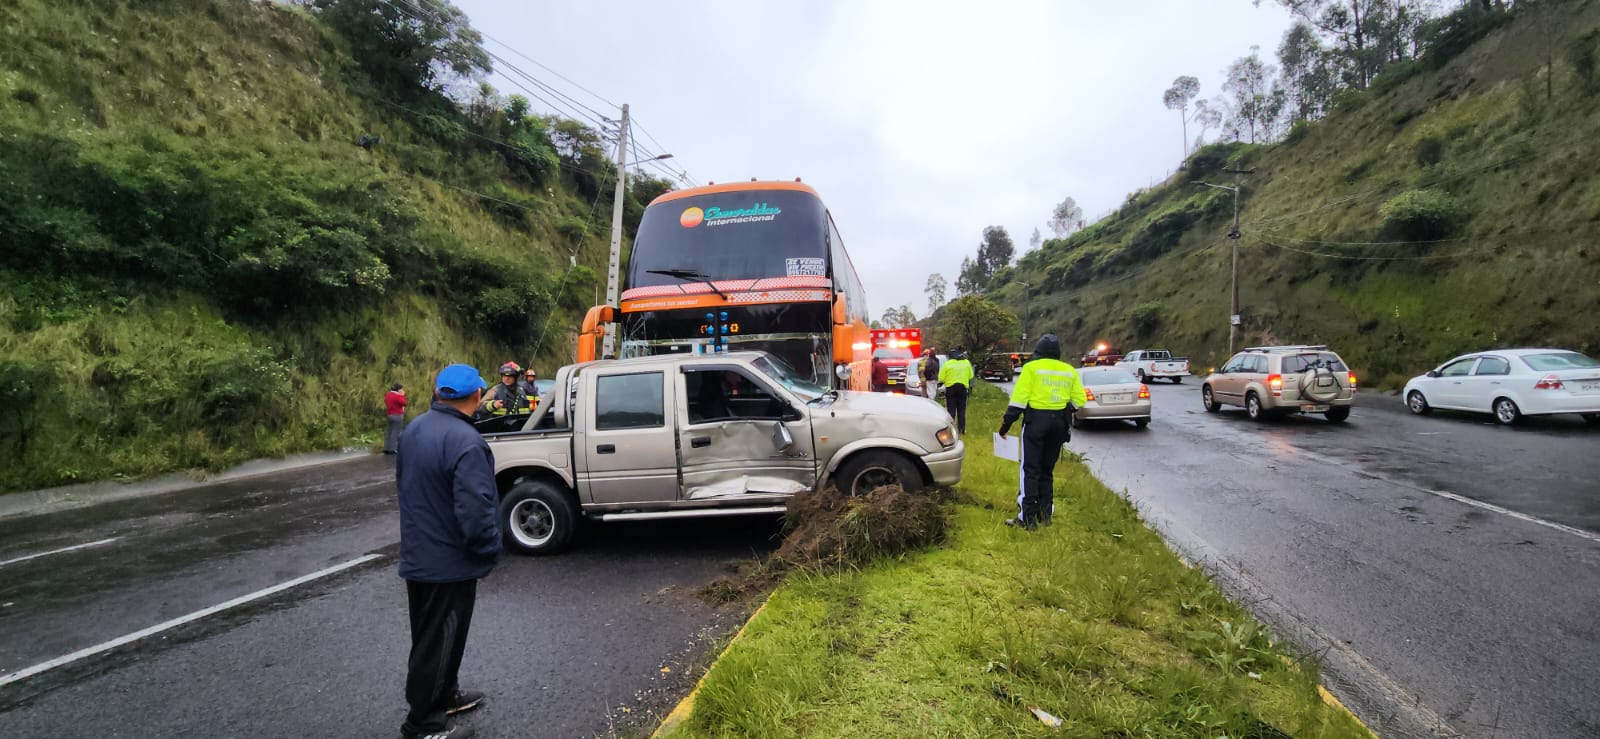 El siniestro se produjo en el sentido norte-sur de la avenida Simón Bolívar. Foto: Cuerpo de Bomberos Quito